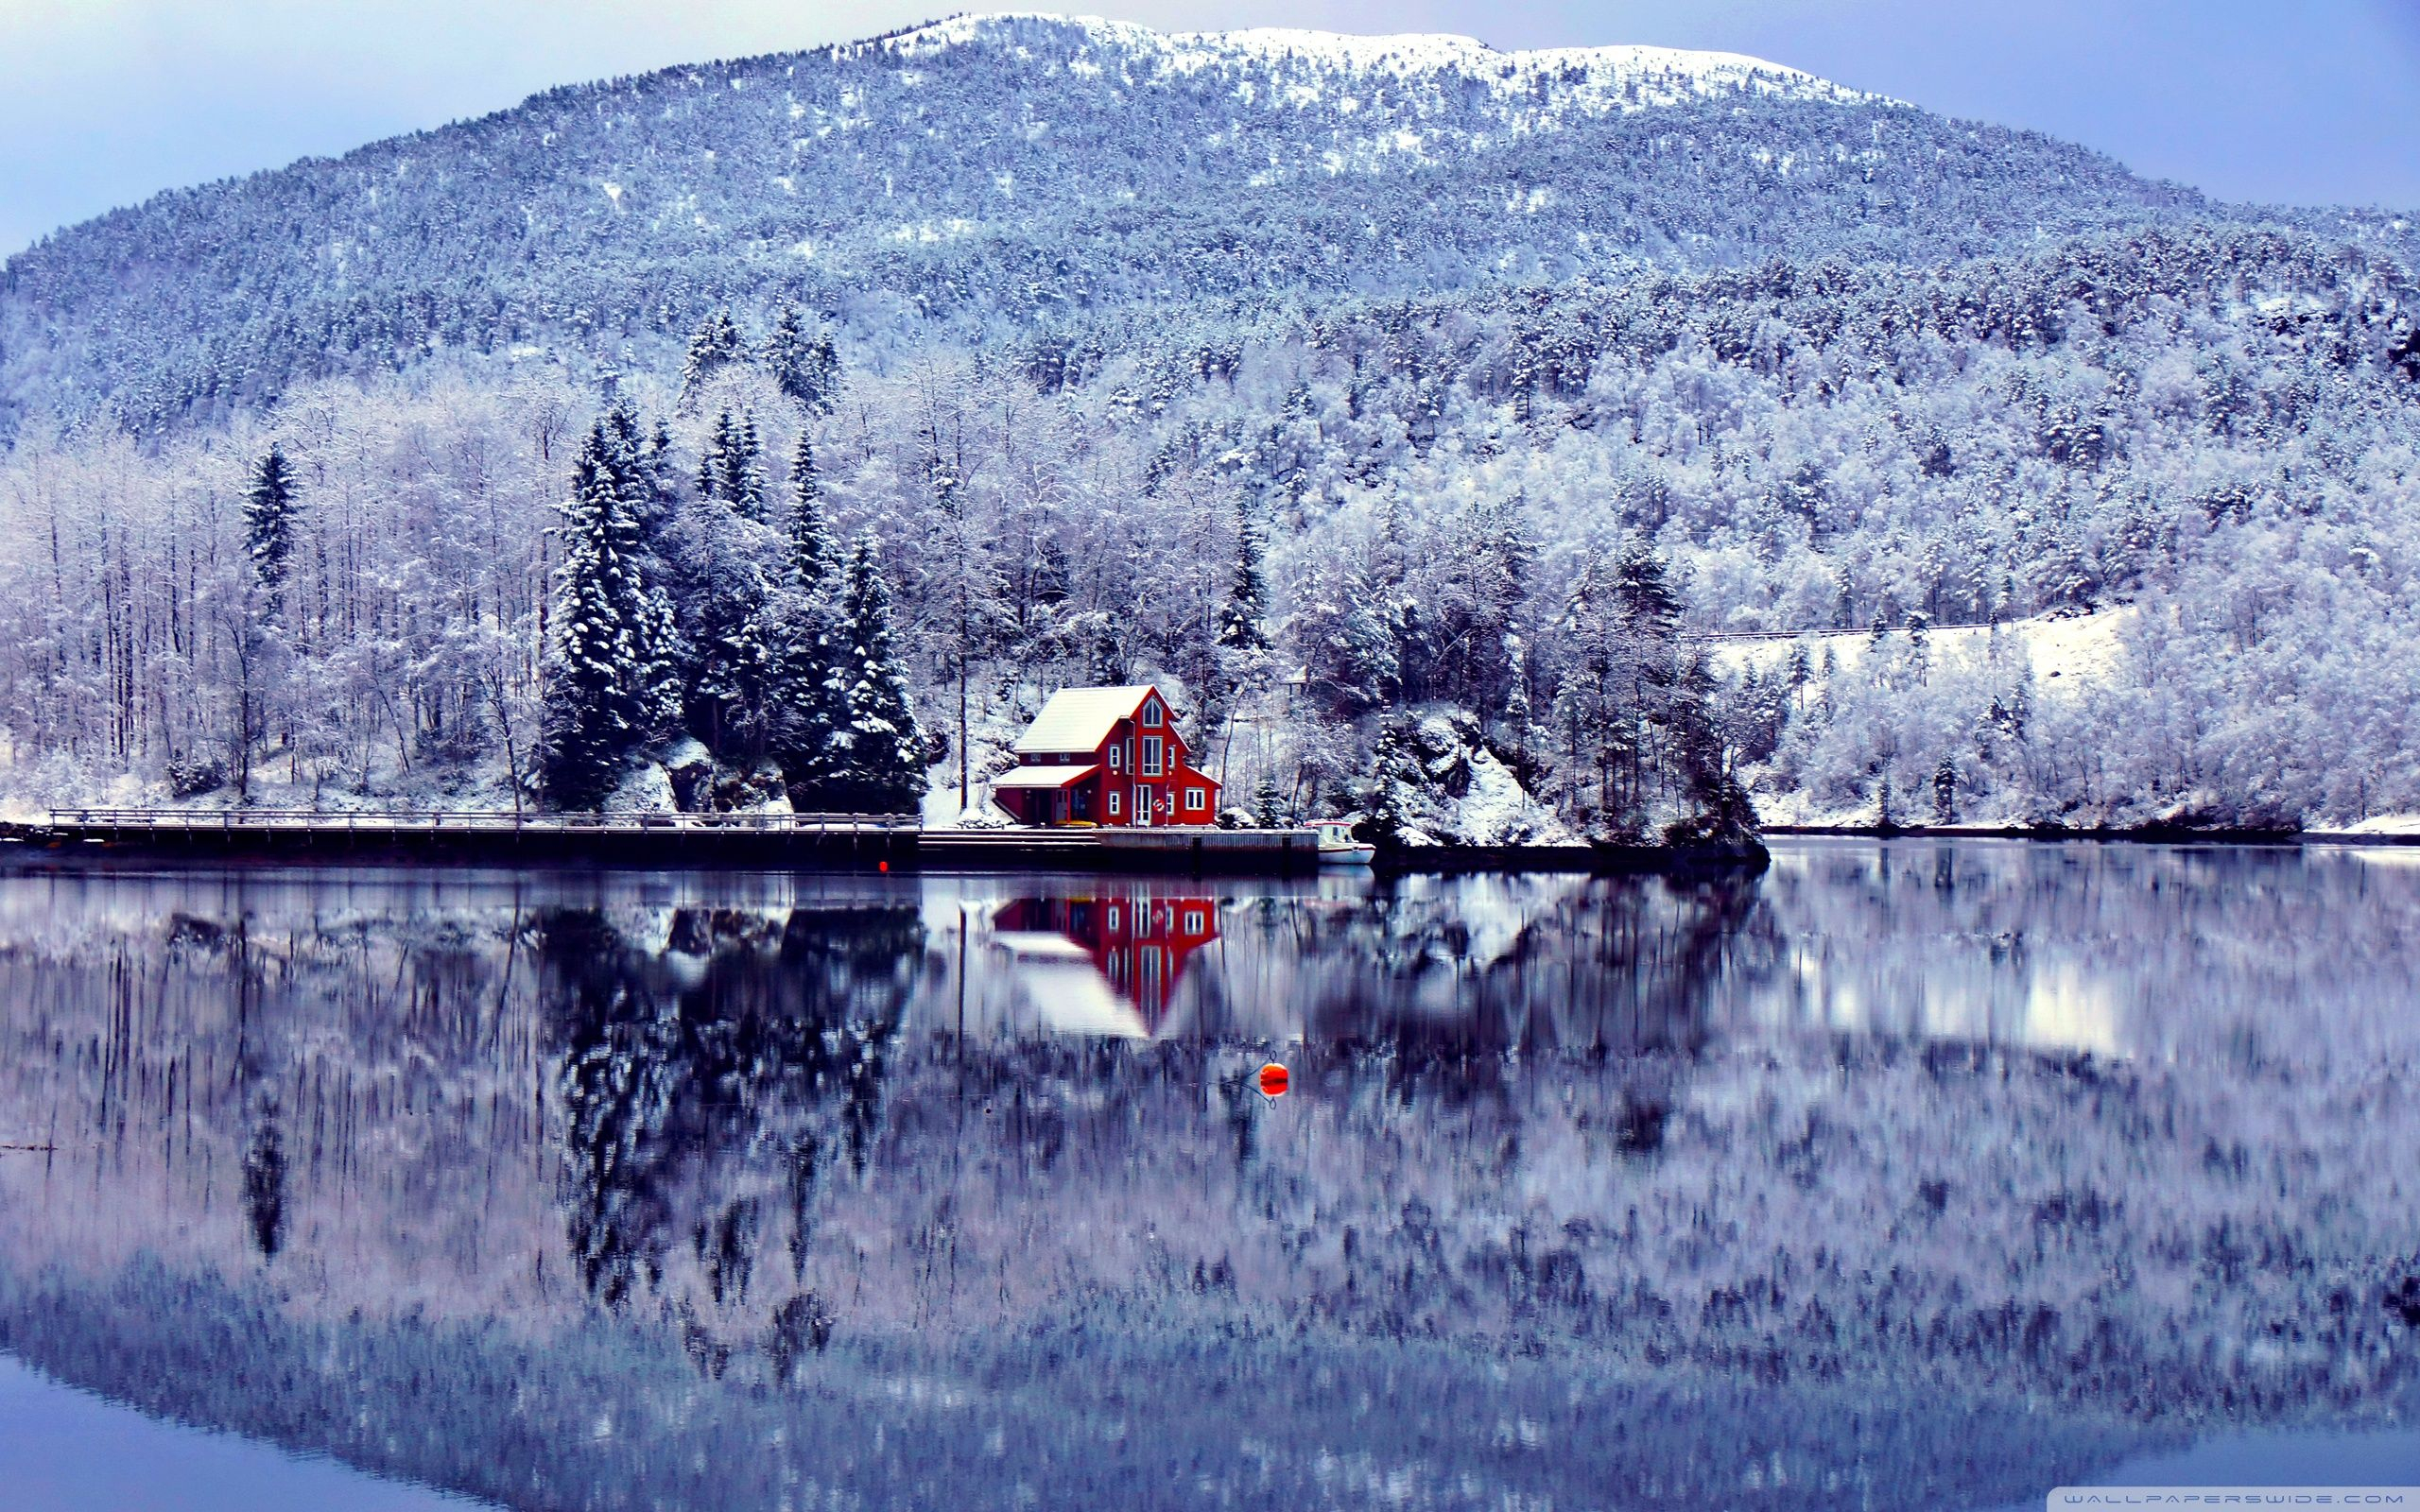 2560x1600 Vermont Winter Desktop Wallpapers Top Free Vermont Winter Desktop Backgrounds